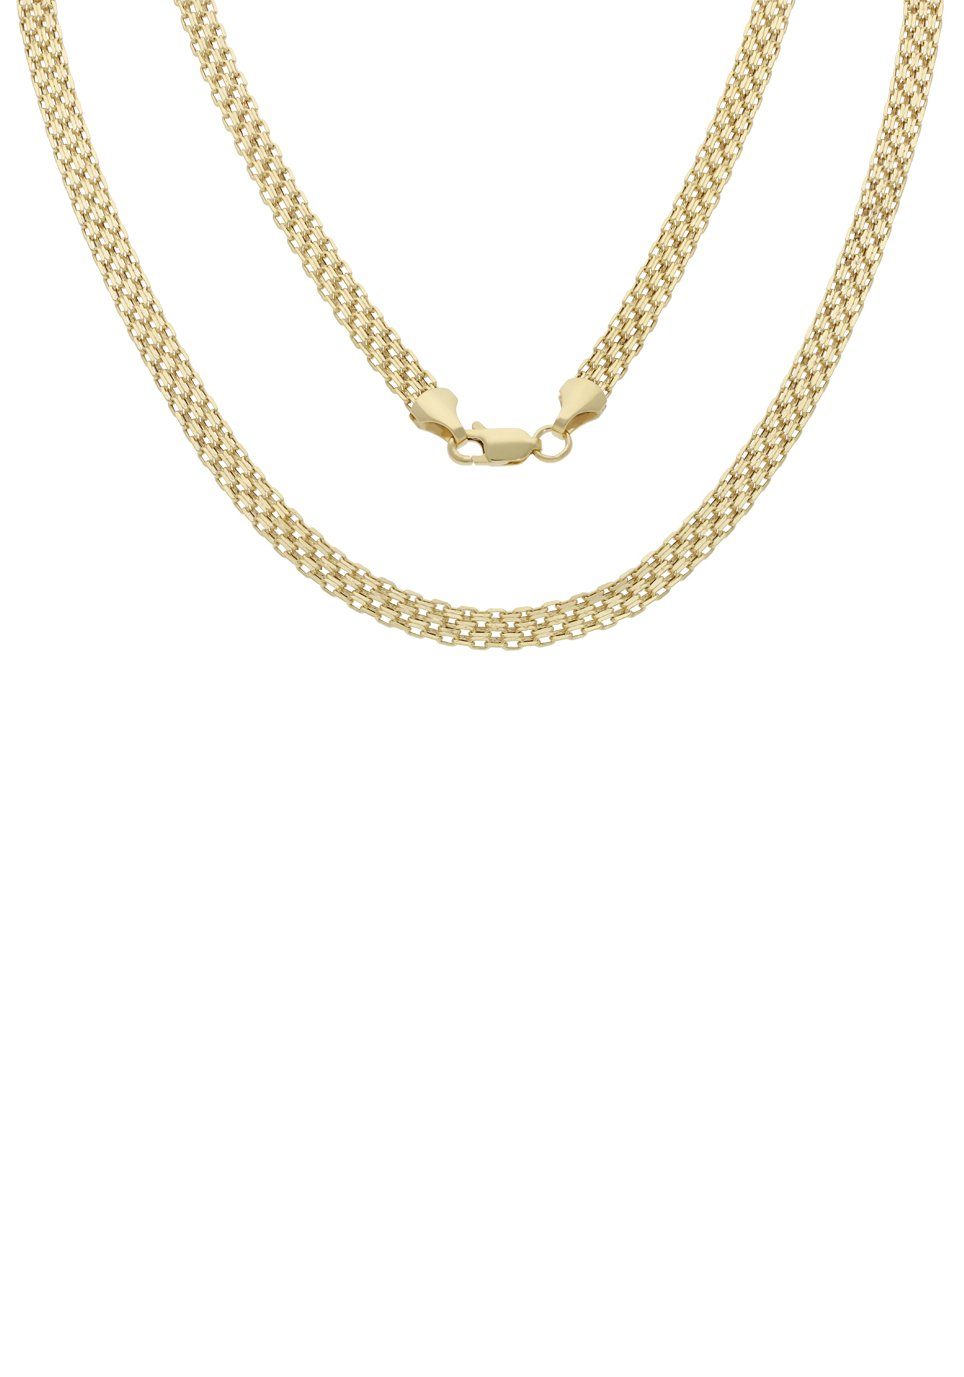 Firetti Goldkette Schmuck Geschenk Gold 375 Halsschmuck Halskette Goldkette Bismarck, zu Kleid, Shirt, Jeans, Sneaker! Anlass Geburtstag Weihnachten